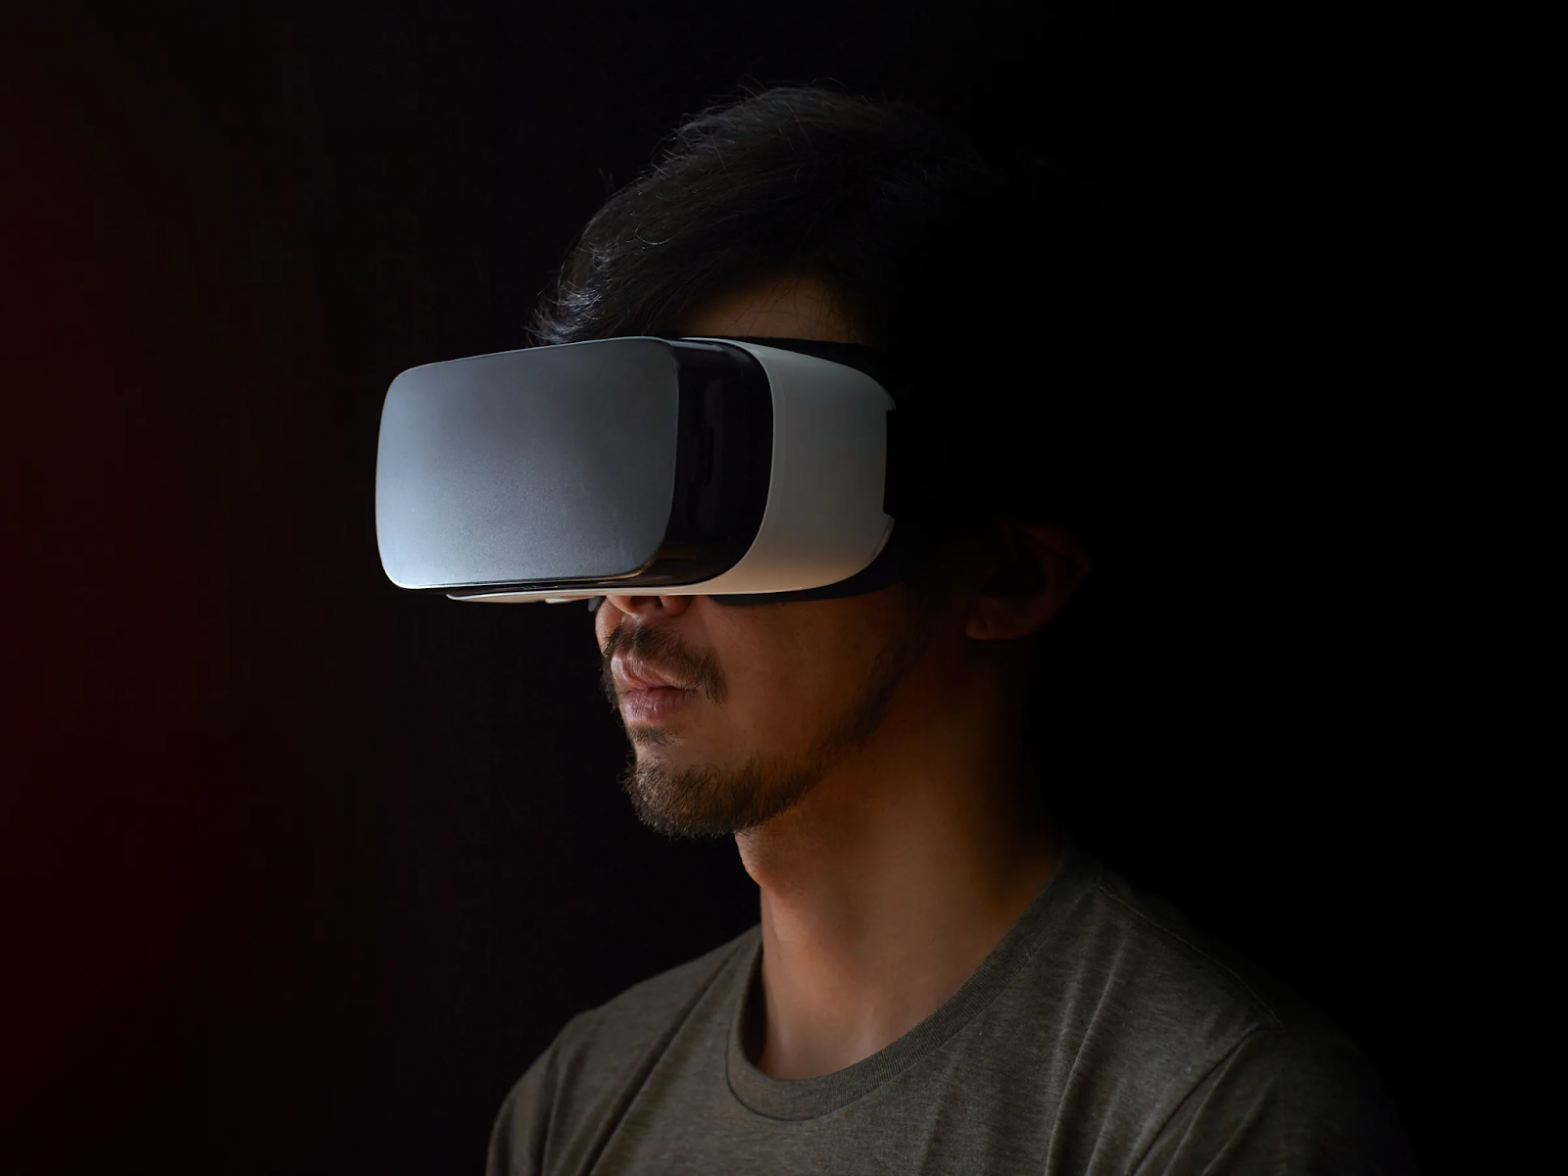 La VR peut aider les patients atteints de TOC